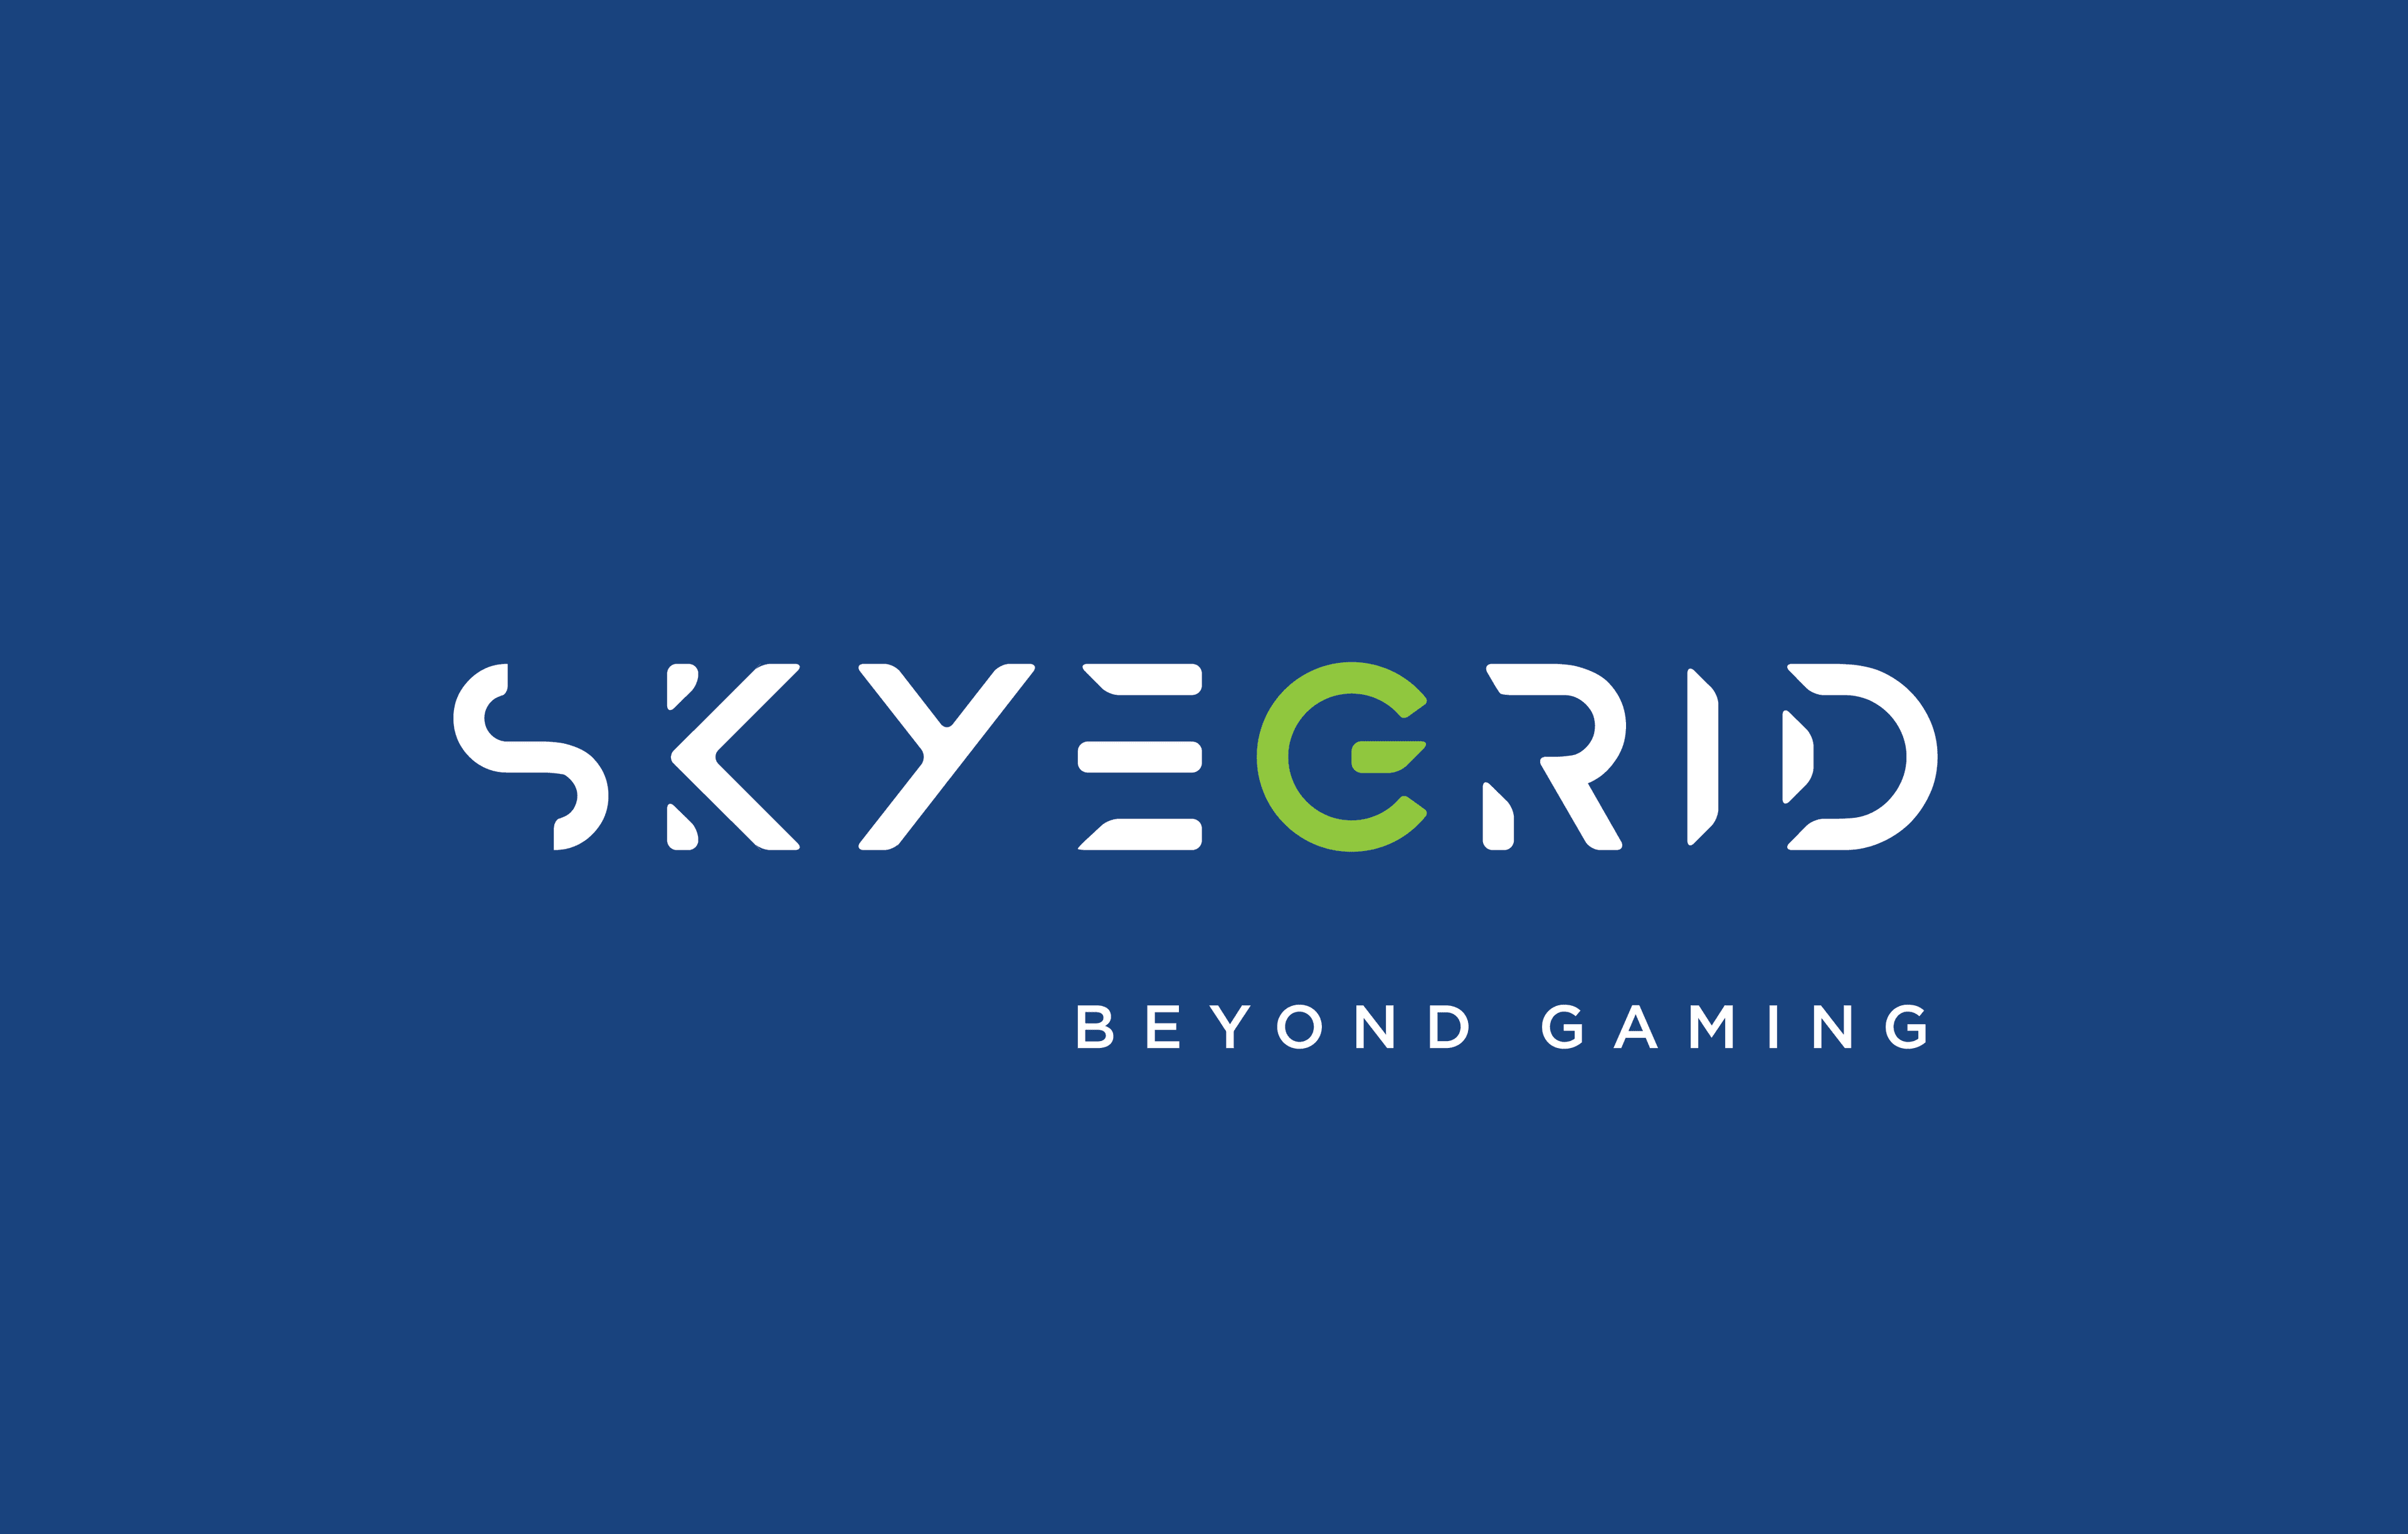 Selain Menyediakan Cloud Gaming, Skyegrid Juga Ingin Menjadi Publisher Game-Game Lokal Indonesia